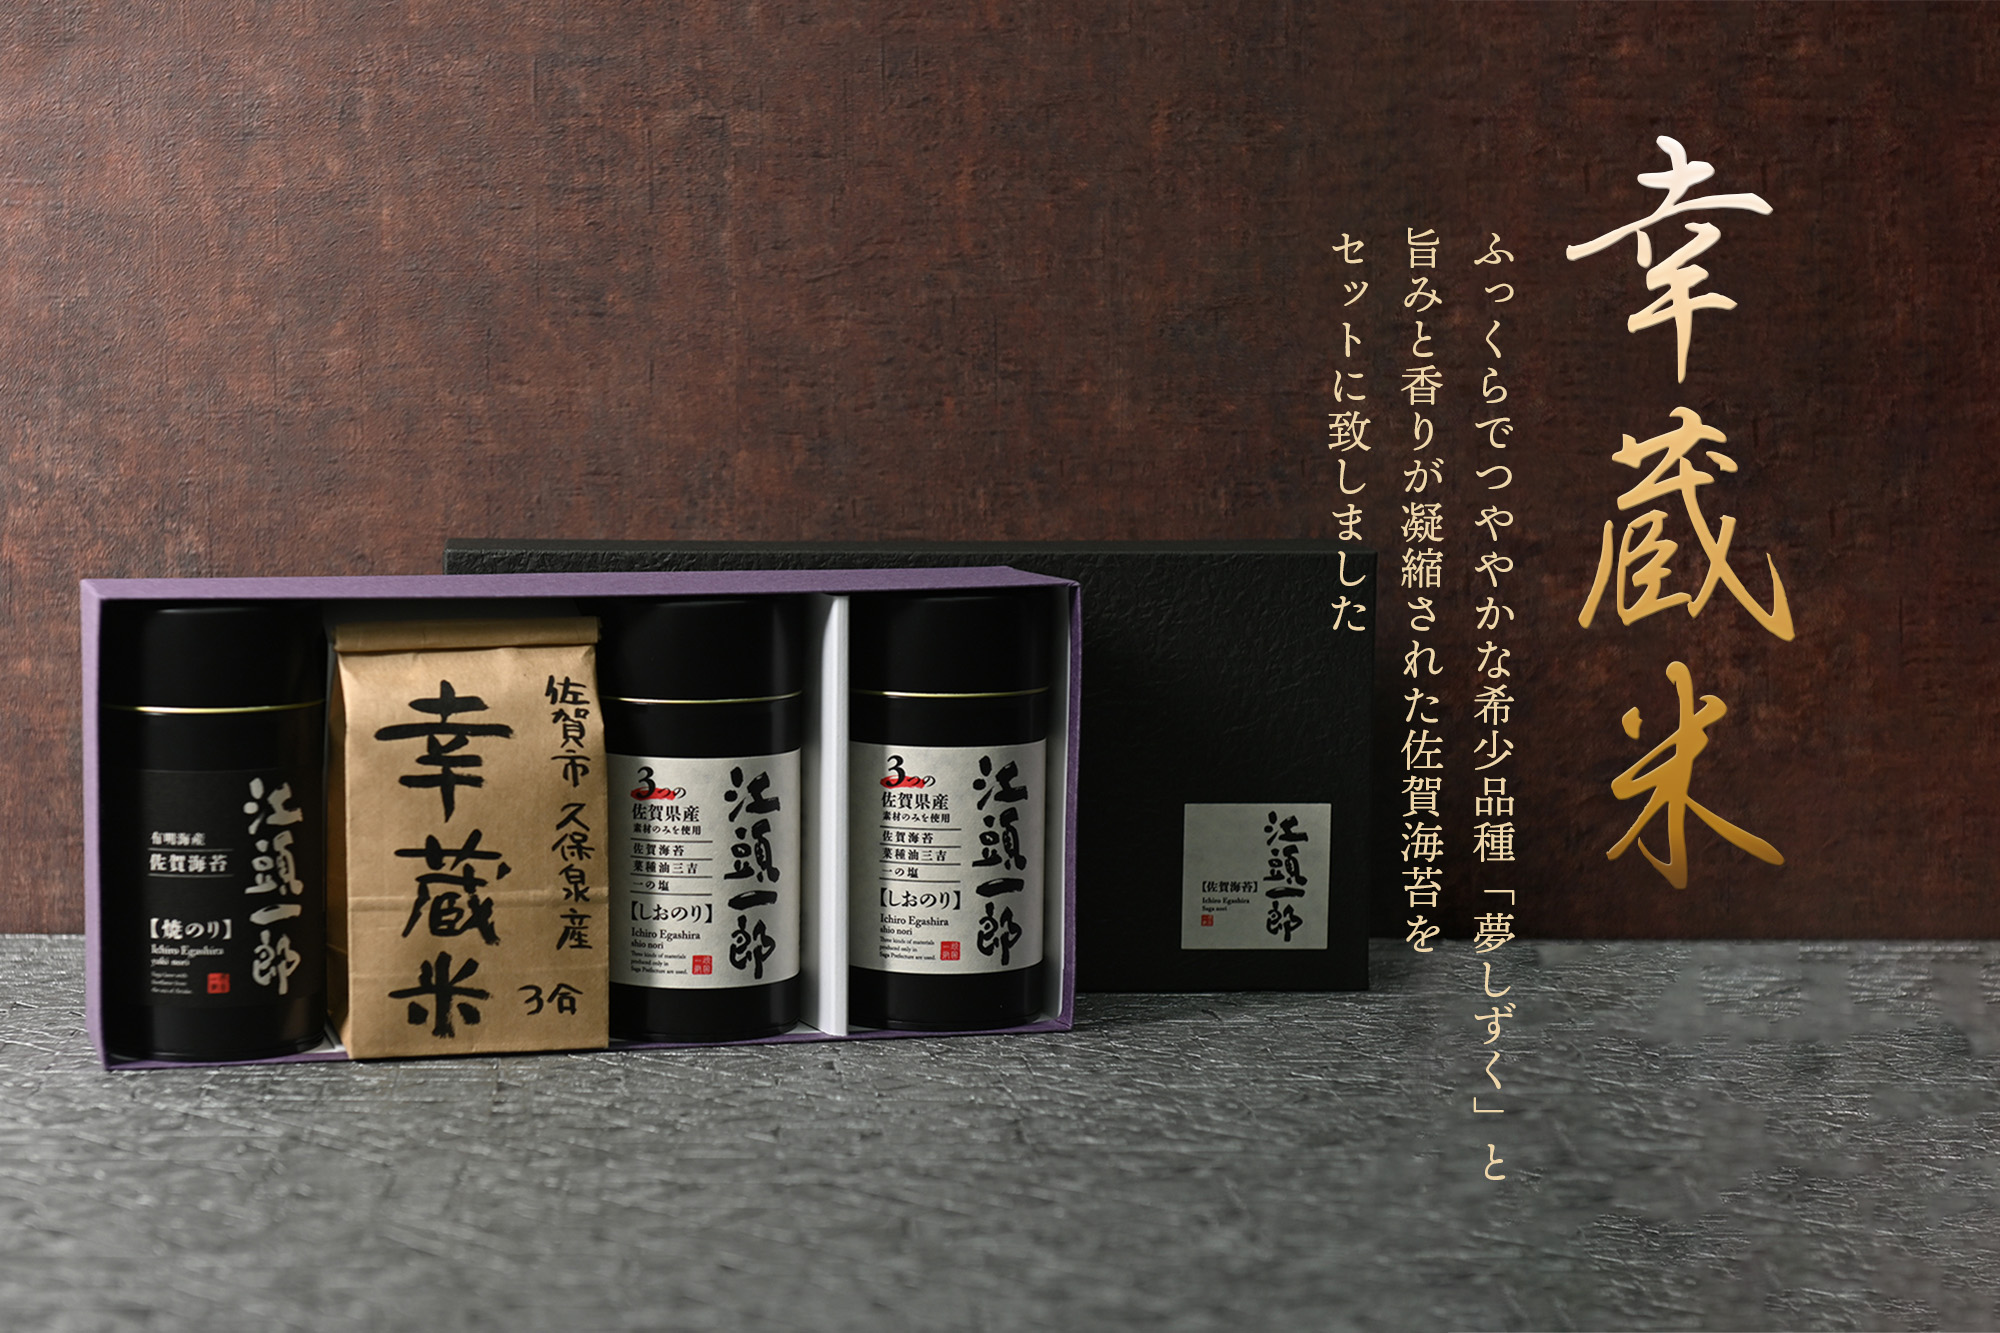 下村ファームさんの『しおのりギフト缶×2』『焼のりギフト缶』幸蔵米3合1袋入りセット